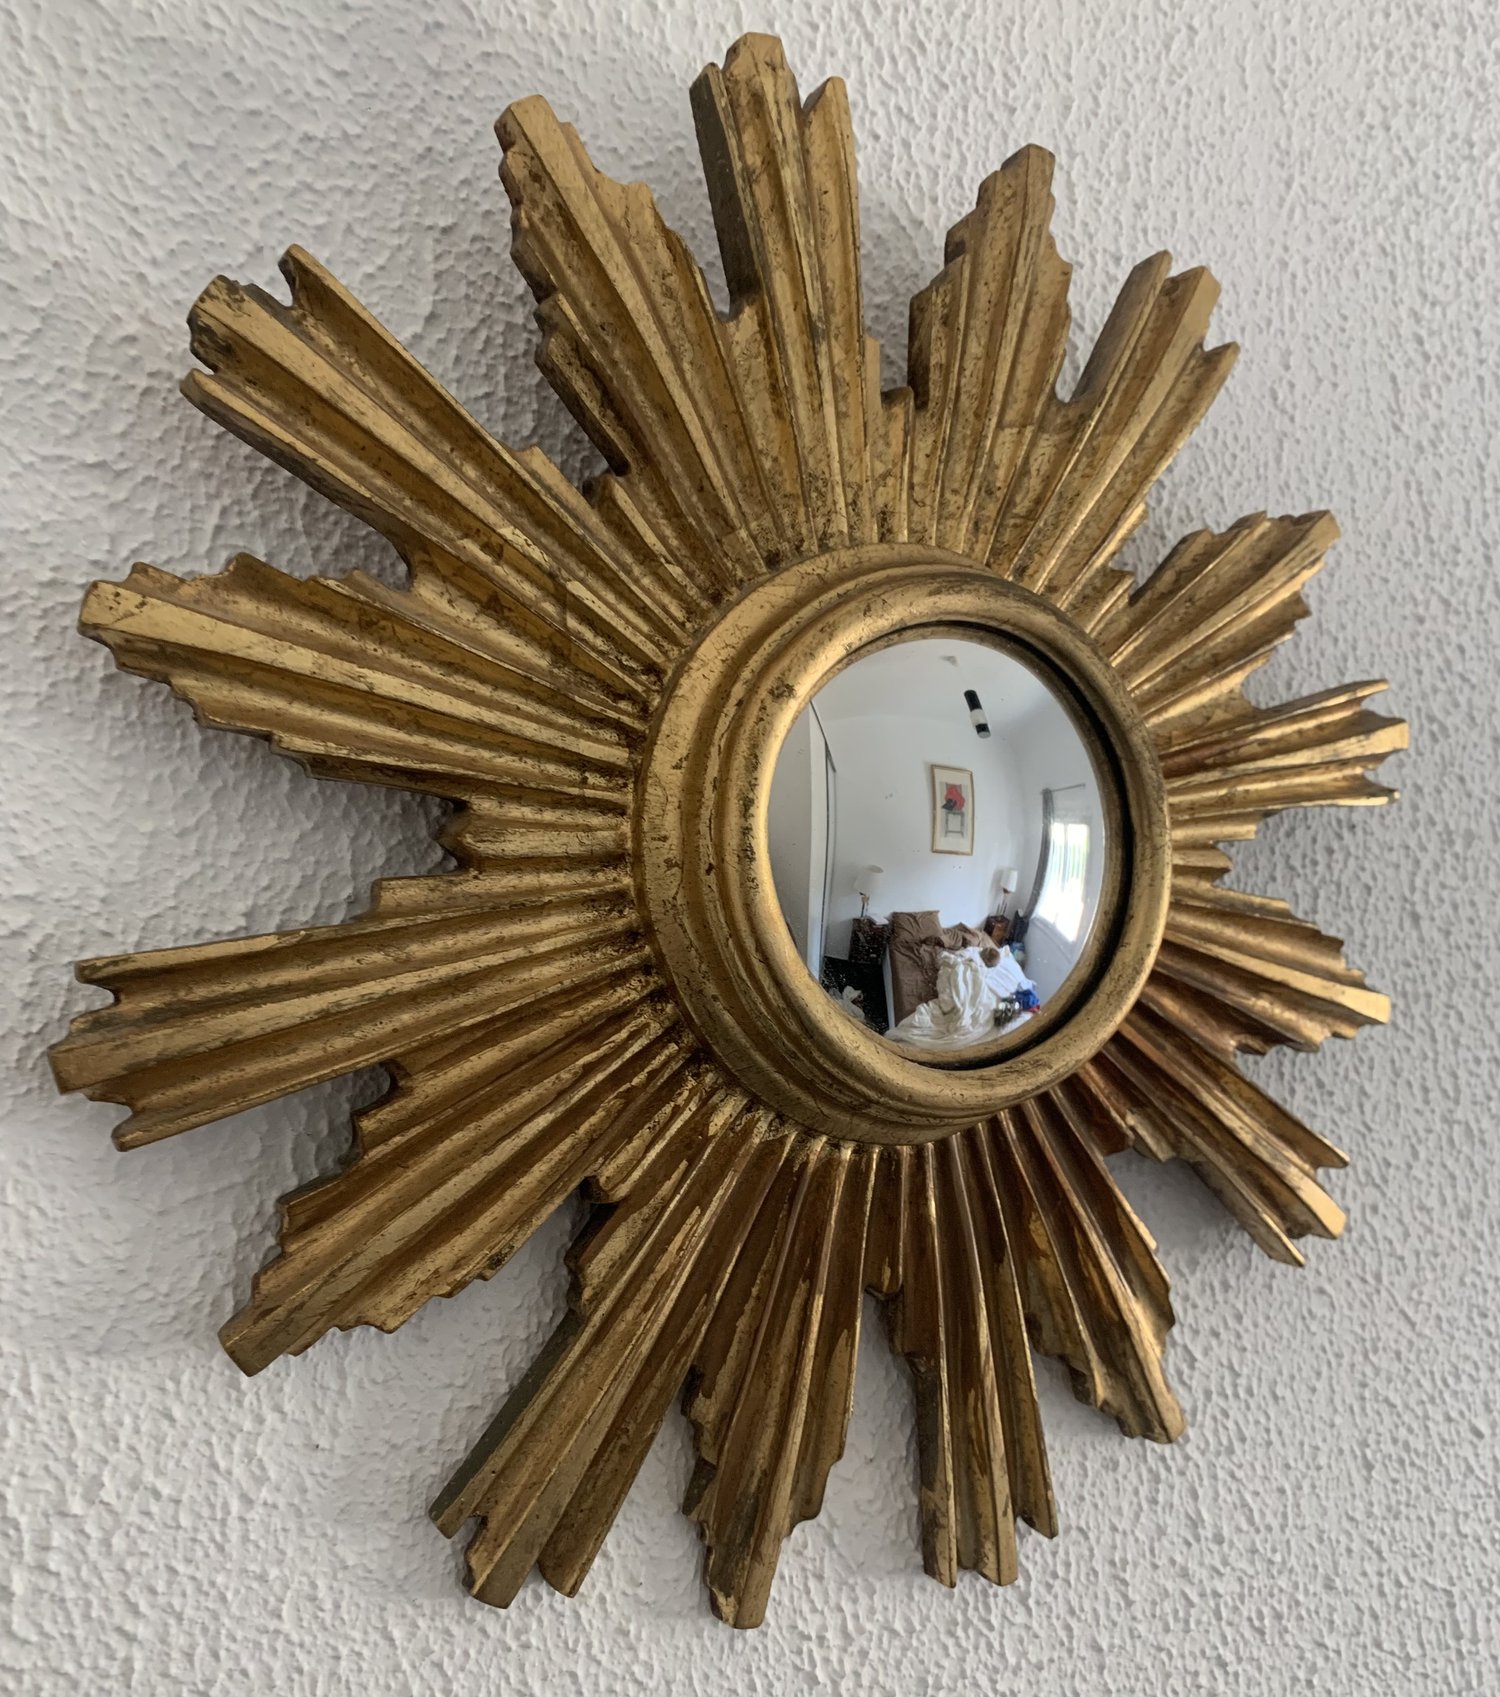 Miroir convexe en résine dorée - 1960